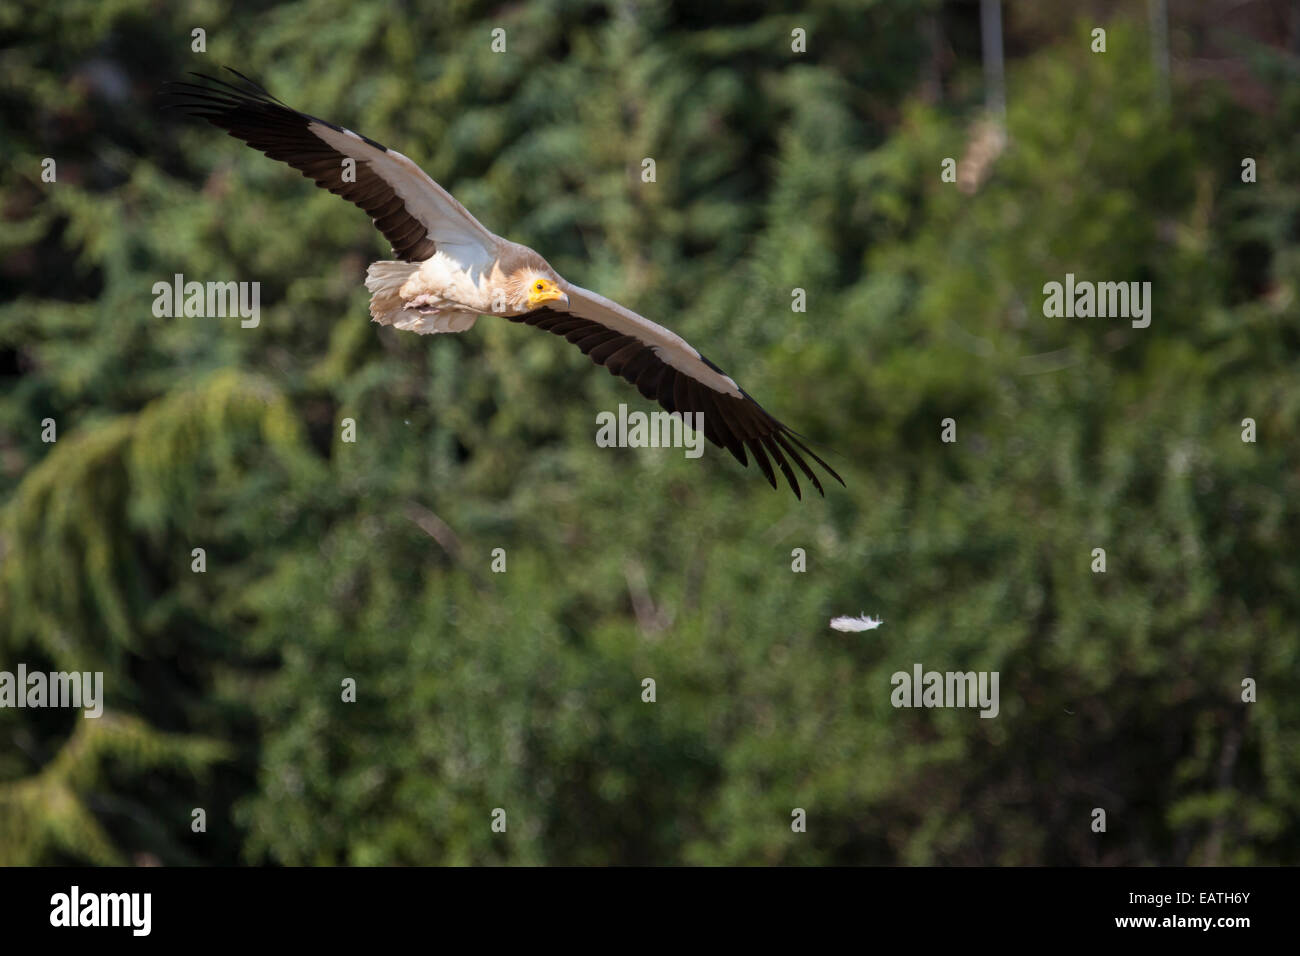 Avvoltoio capovaccaio volare come una piuma galleggianti accanto Foto Stock